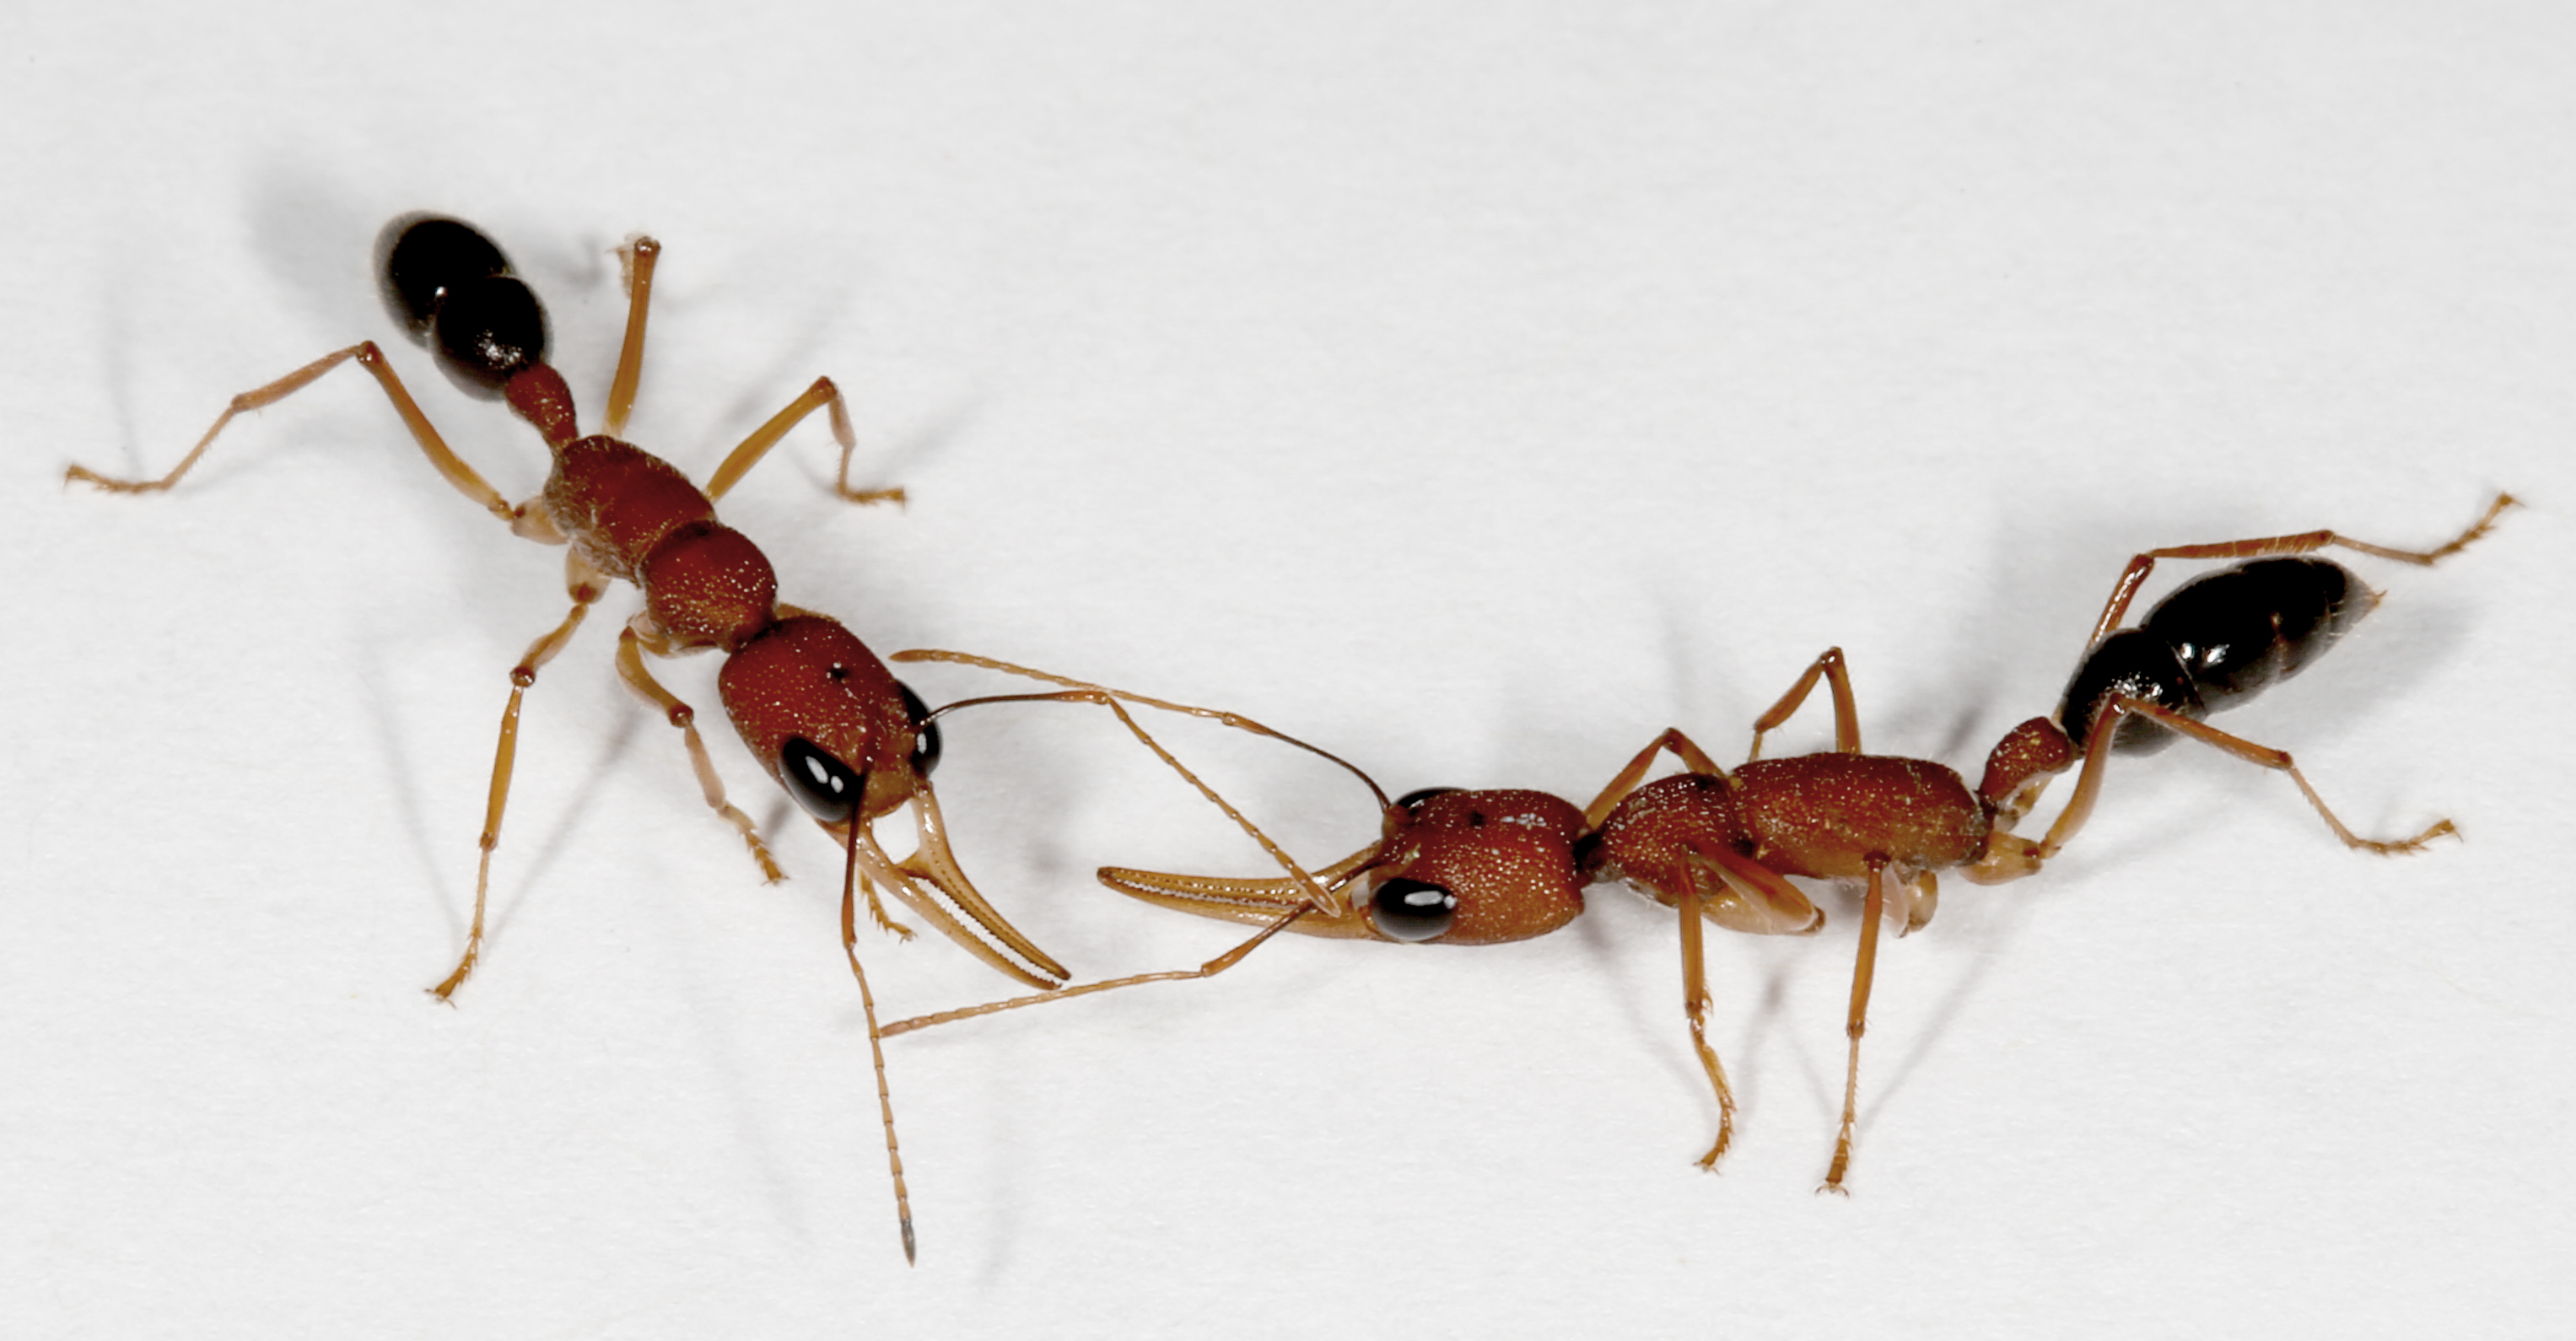 Муравьи купить озон. Харпегнатос сальтатор муравьи. Harpegnathos Saltator (салтаторы). Saltator муравей. Красный фаэтончик муравей.